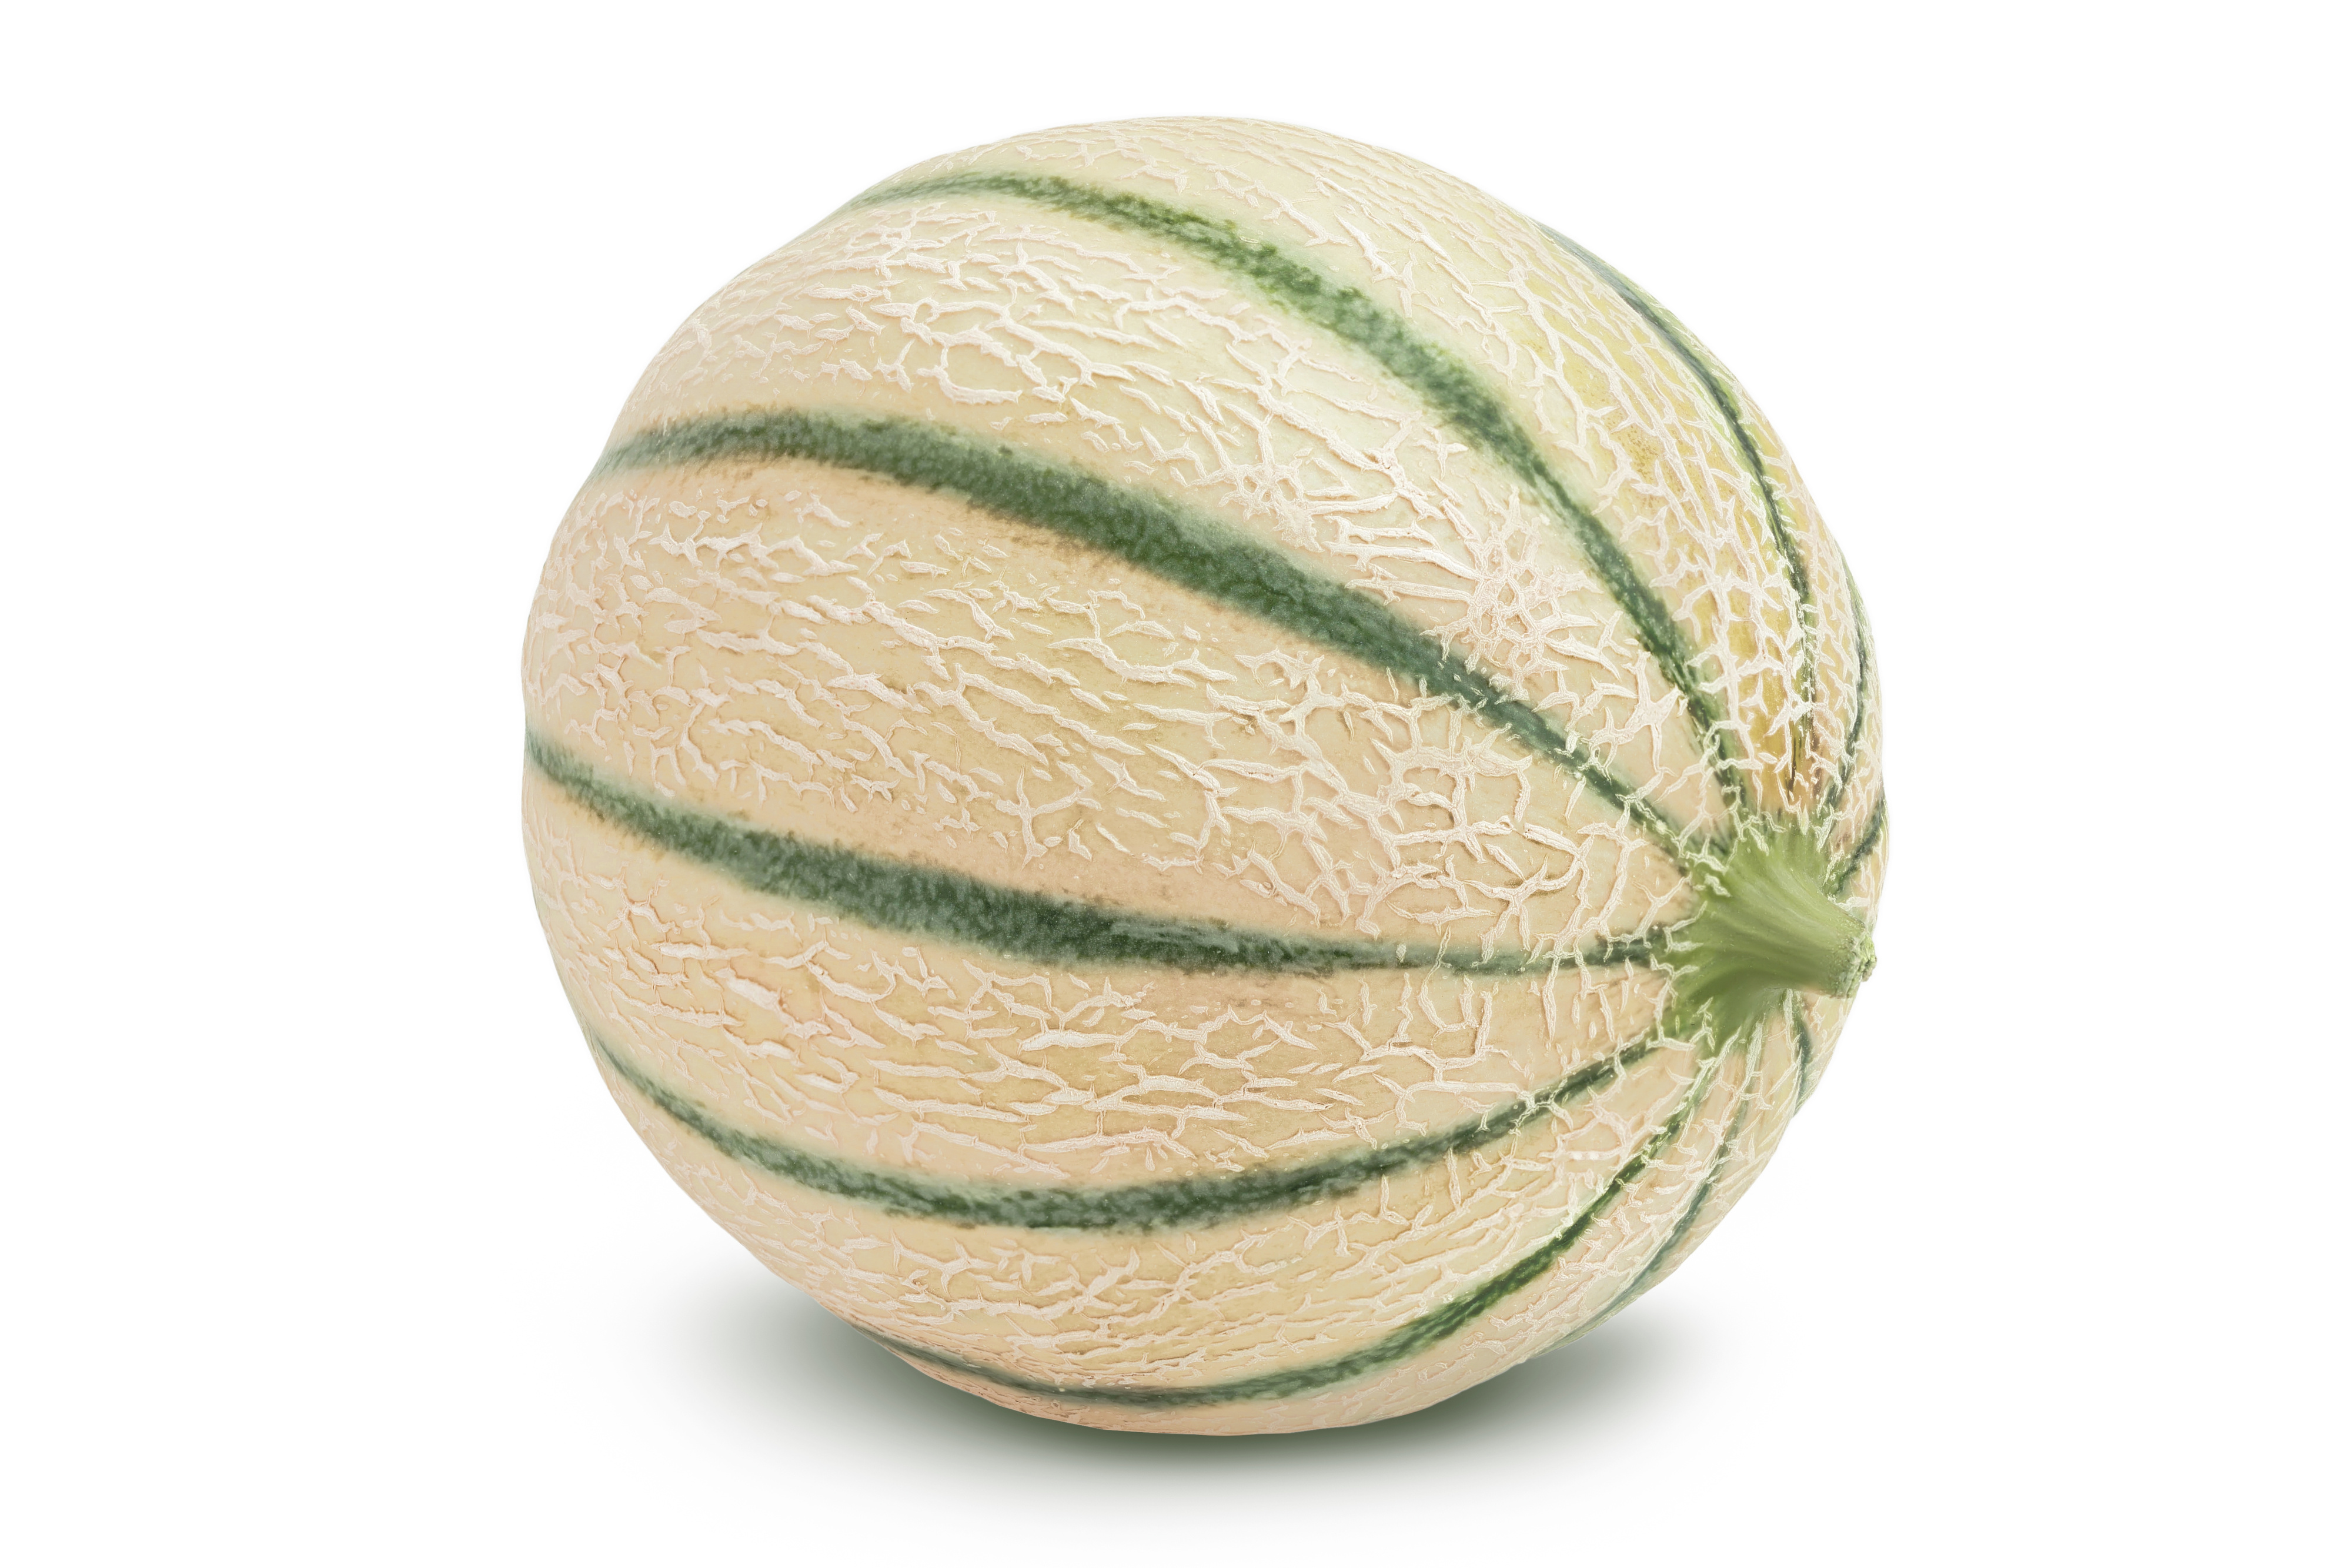 Melon Cantaloupe grön c700g-800g/per Styck. Pris på Styck- Brasilien